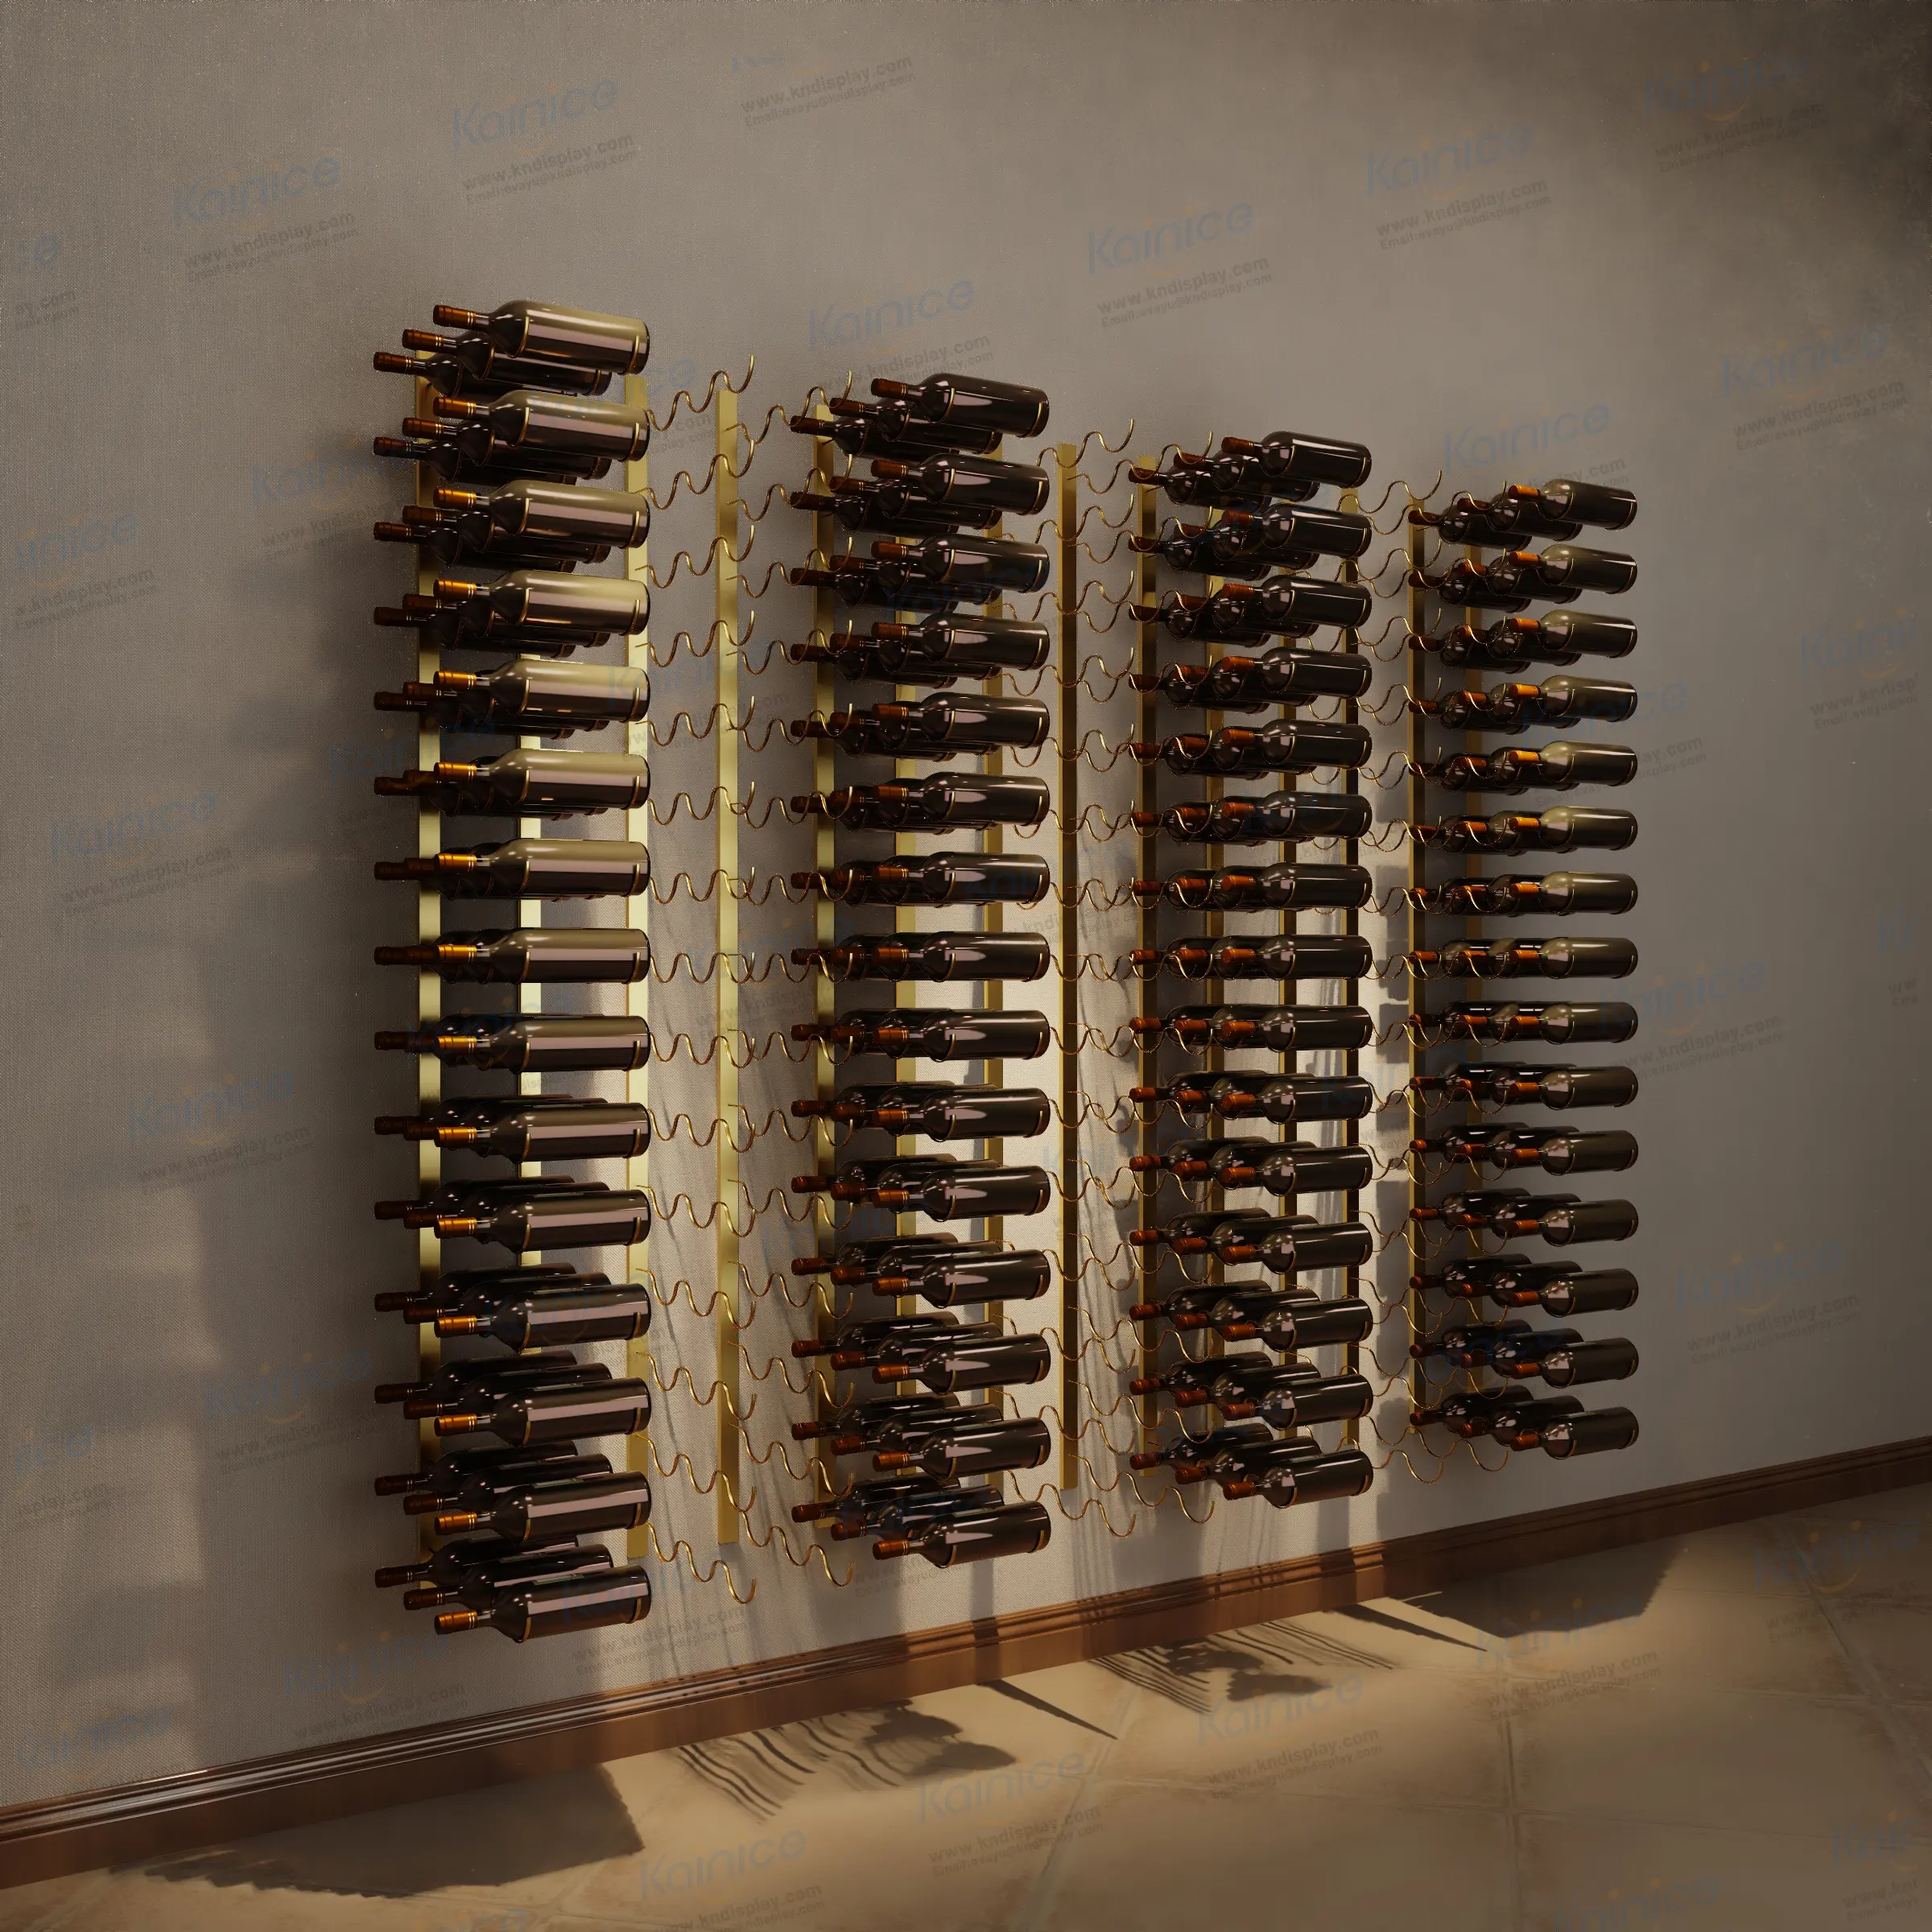 केनी शराब की दुकान लोहे की चेन केबल वाइन रैक एक बोतल सोने की धातु दीवार पर लगे वाइन डिस्प्ले और भंडारण रैक